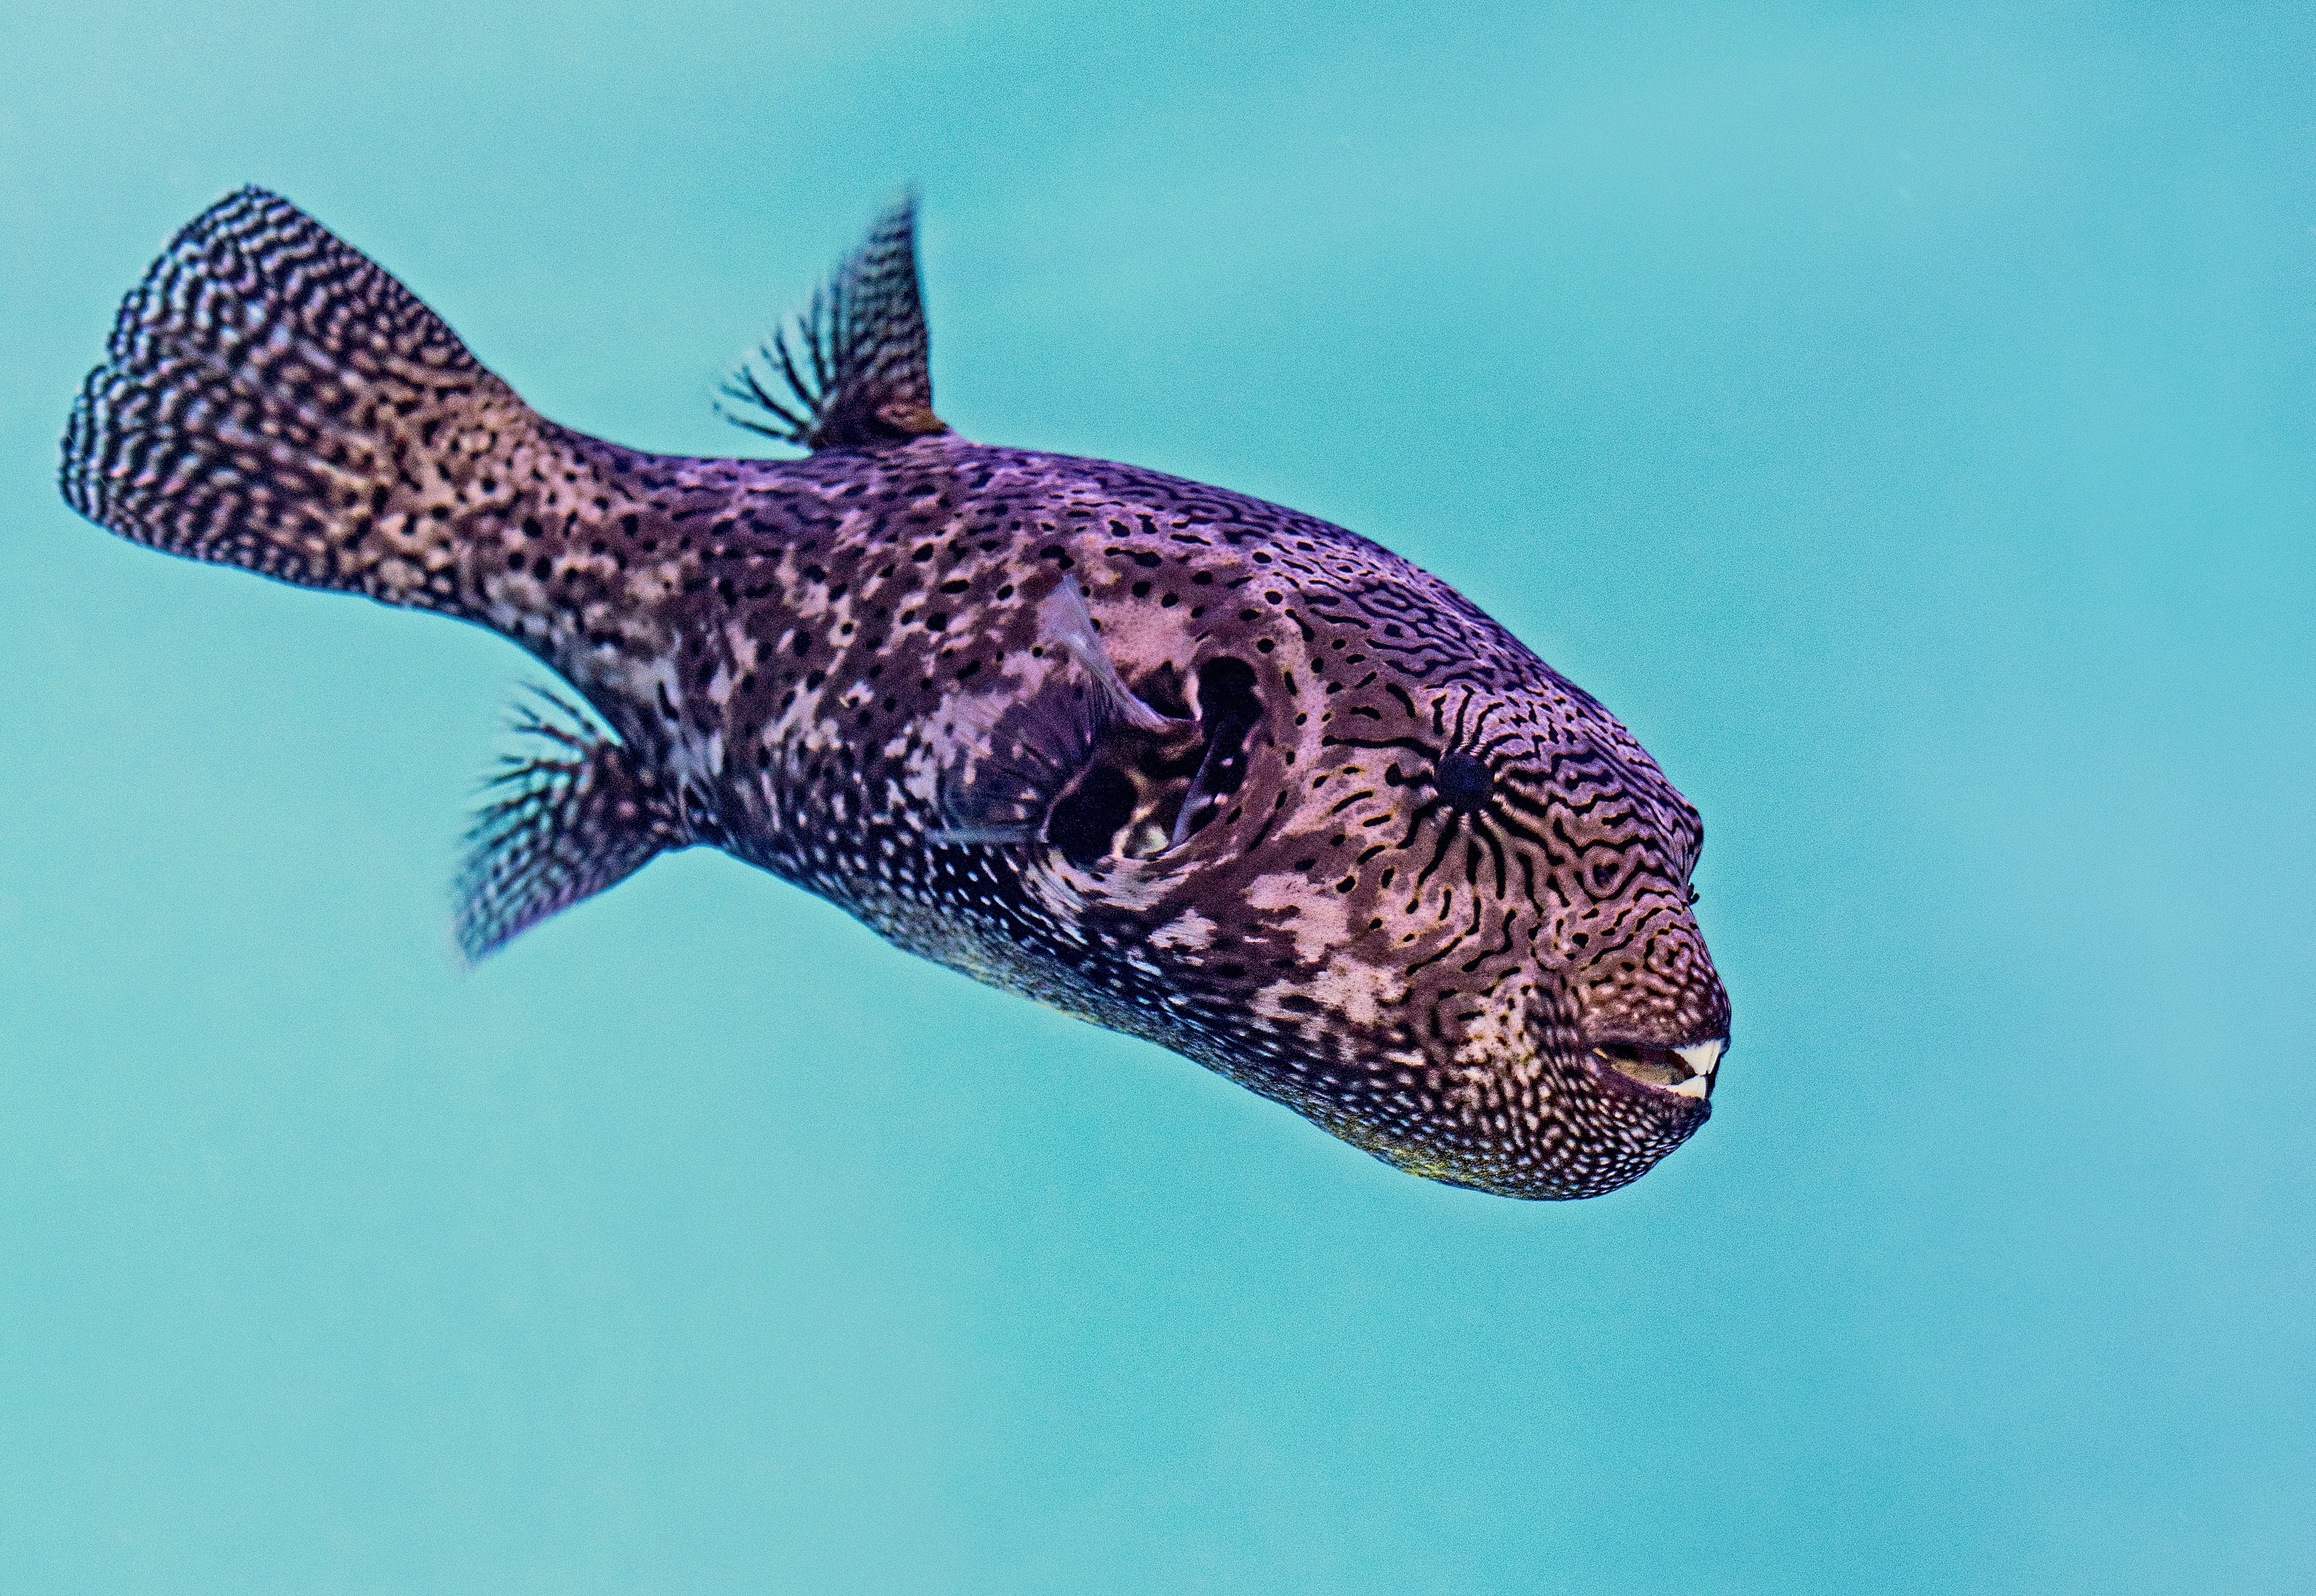 purple pupper fish under water